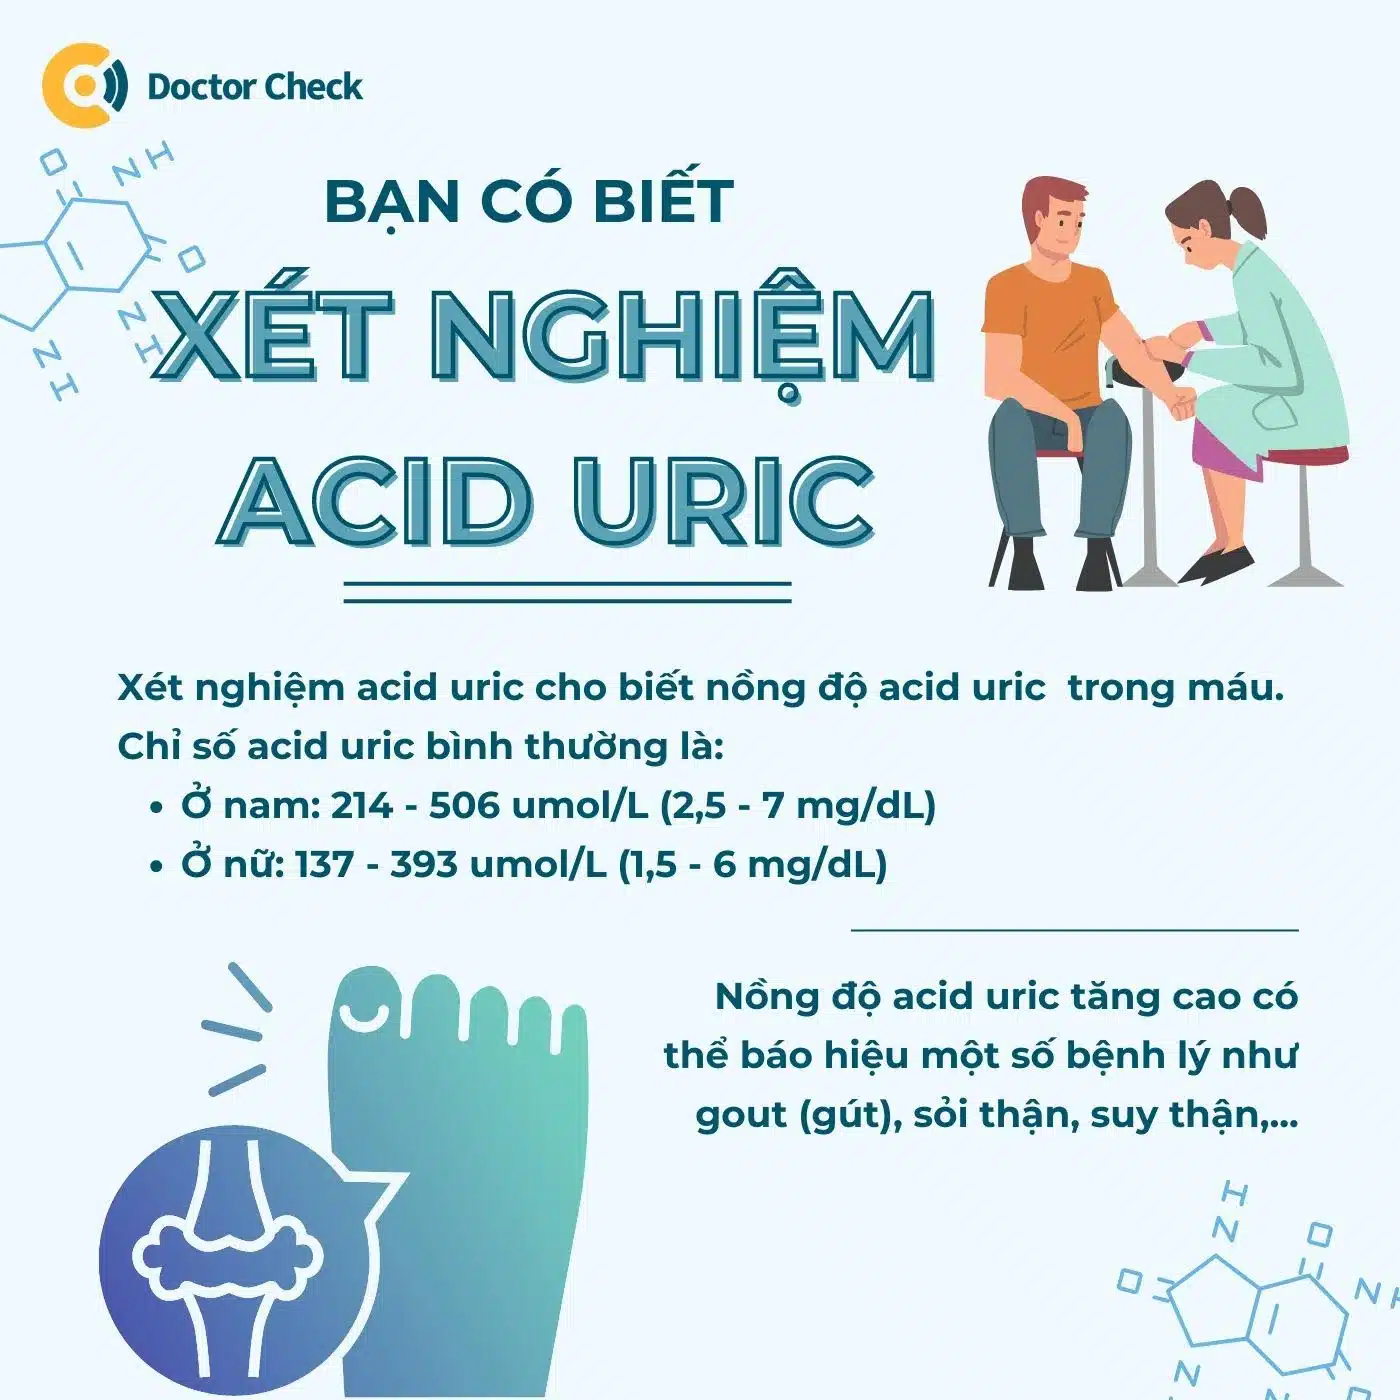 Chỉ số acid uric - bạn đã biết về axit uric